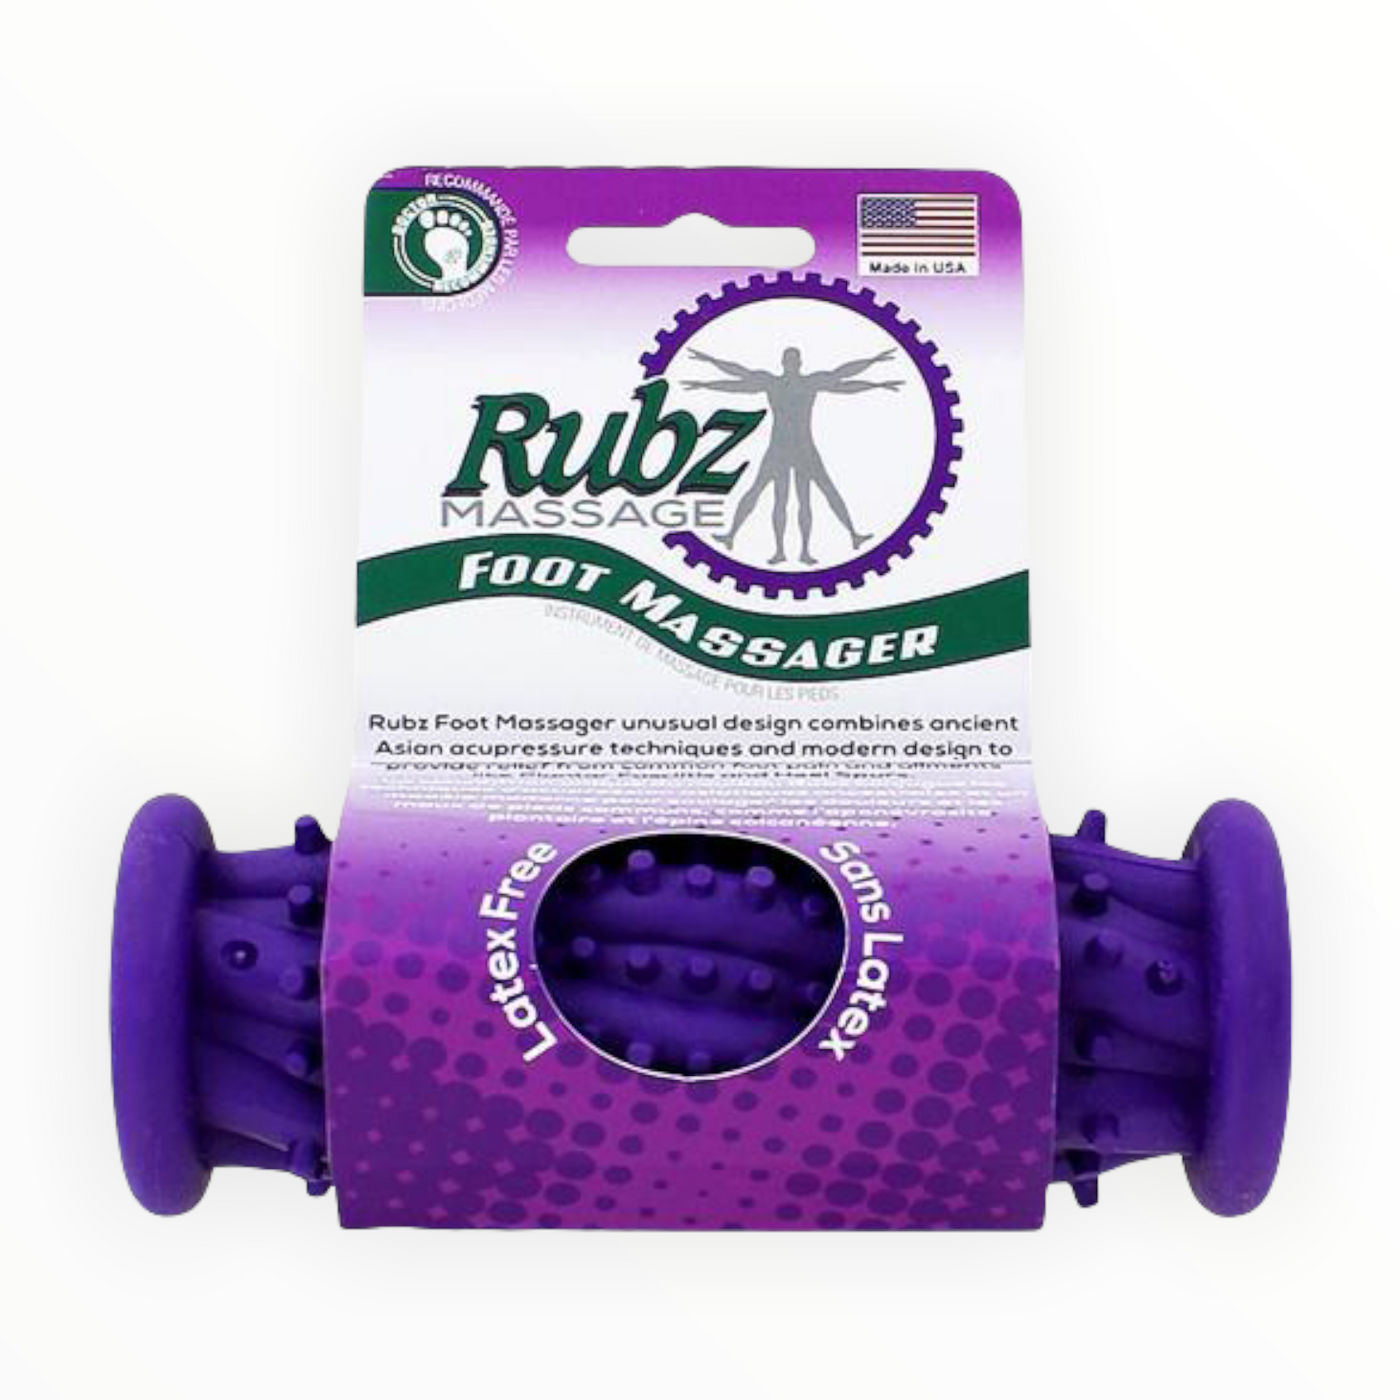 Rubz Foot Massager